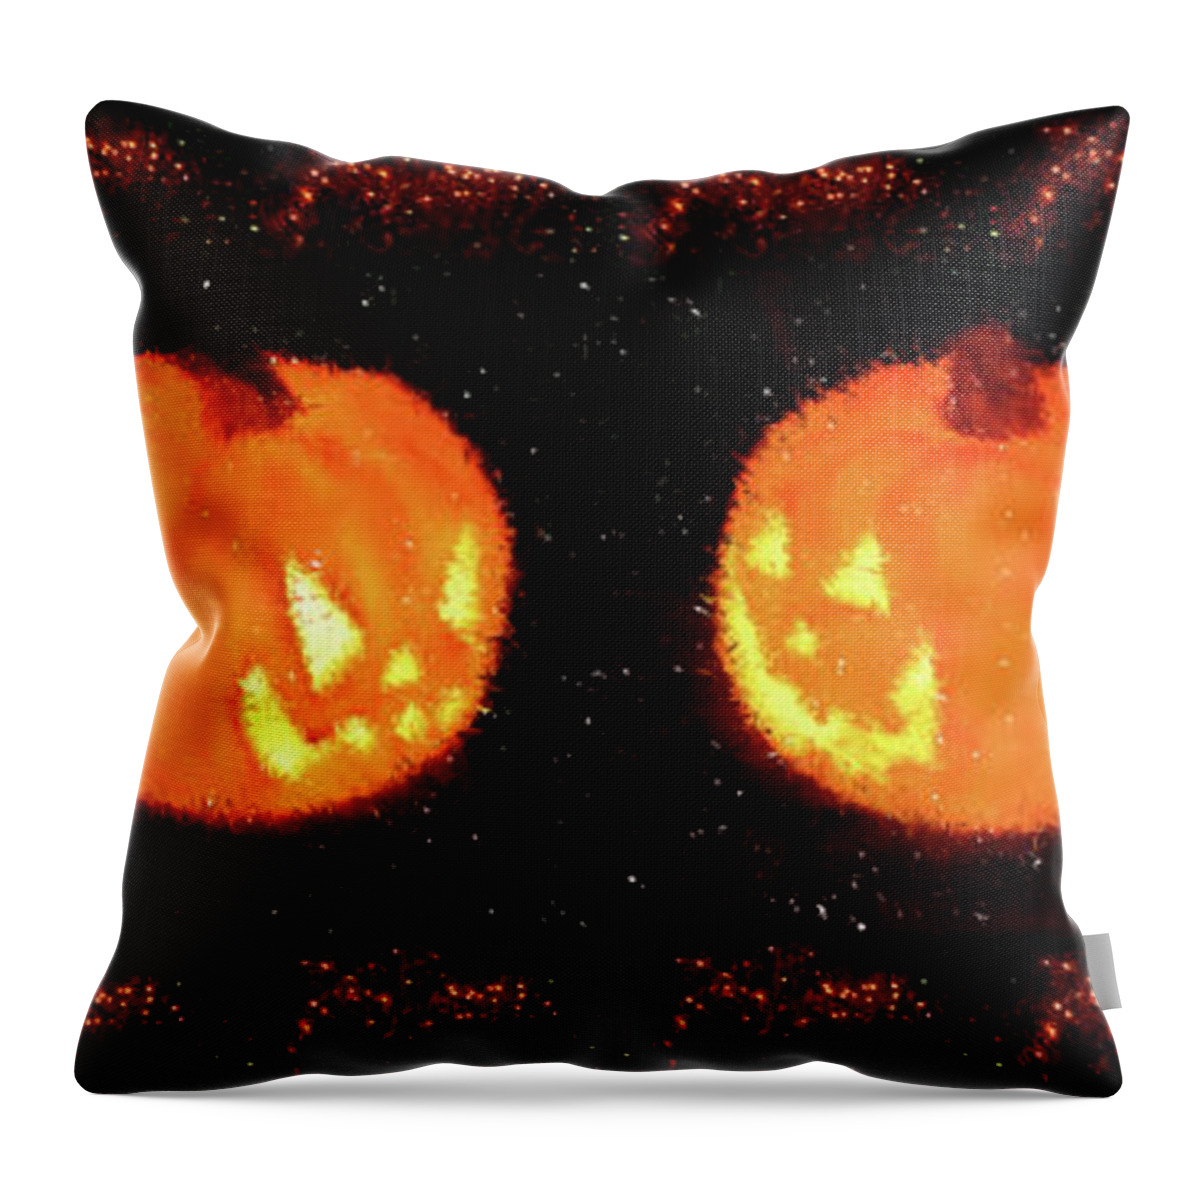 Pumpkin Throw Pillow featuring the digital art Angry Pumpkins Banner by Richard De Wolfe